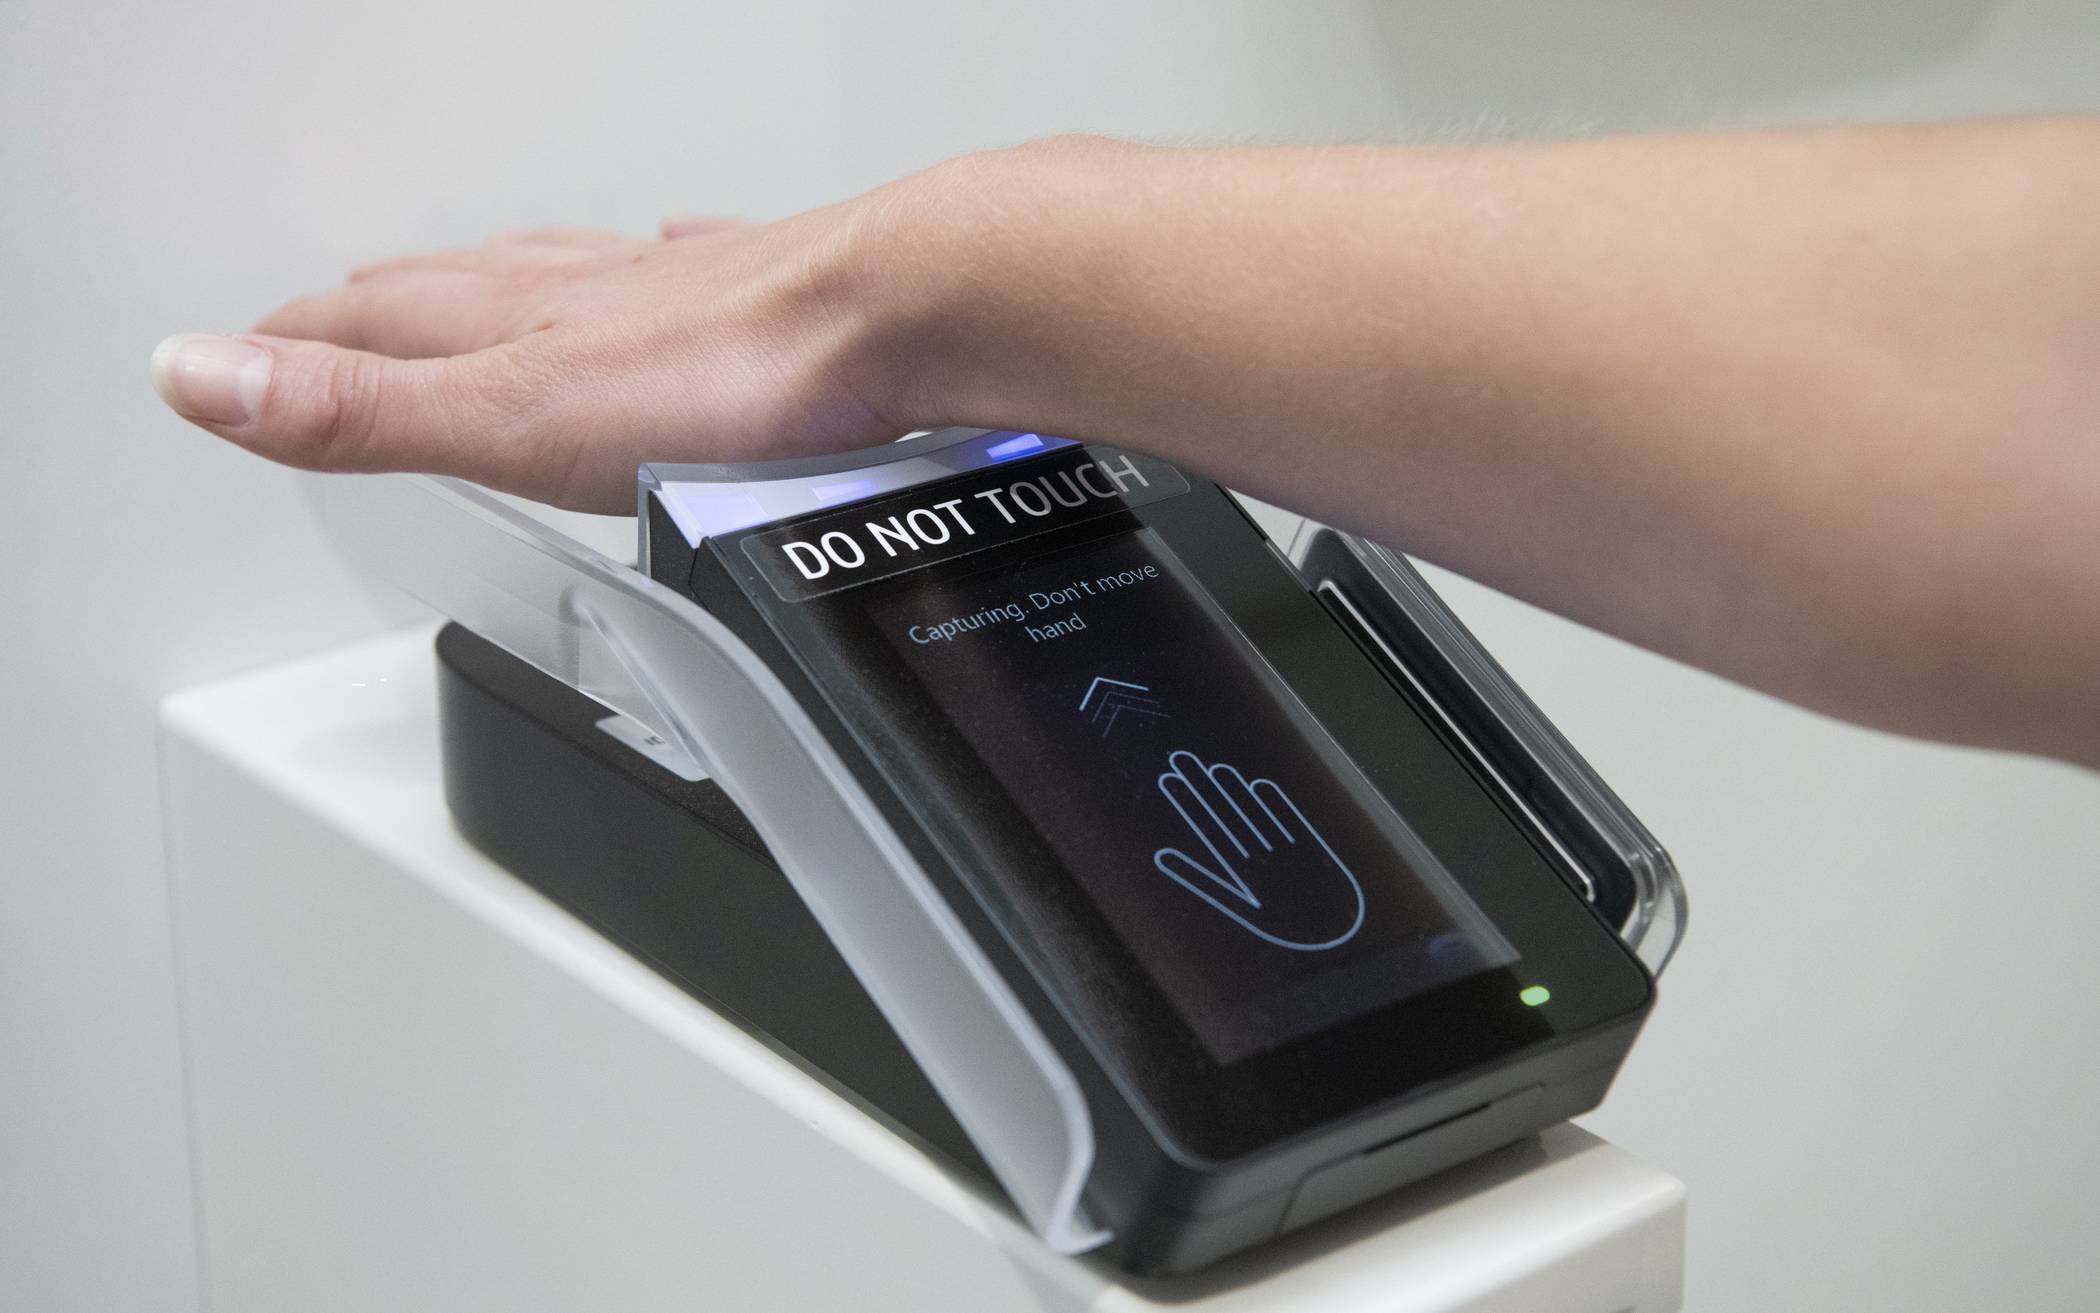  Der Handvenenscanner durchleuchtet die Hand – eines der derzeit sichersten Mittel zur eindeutigen Patienten-Identifikation. 